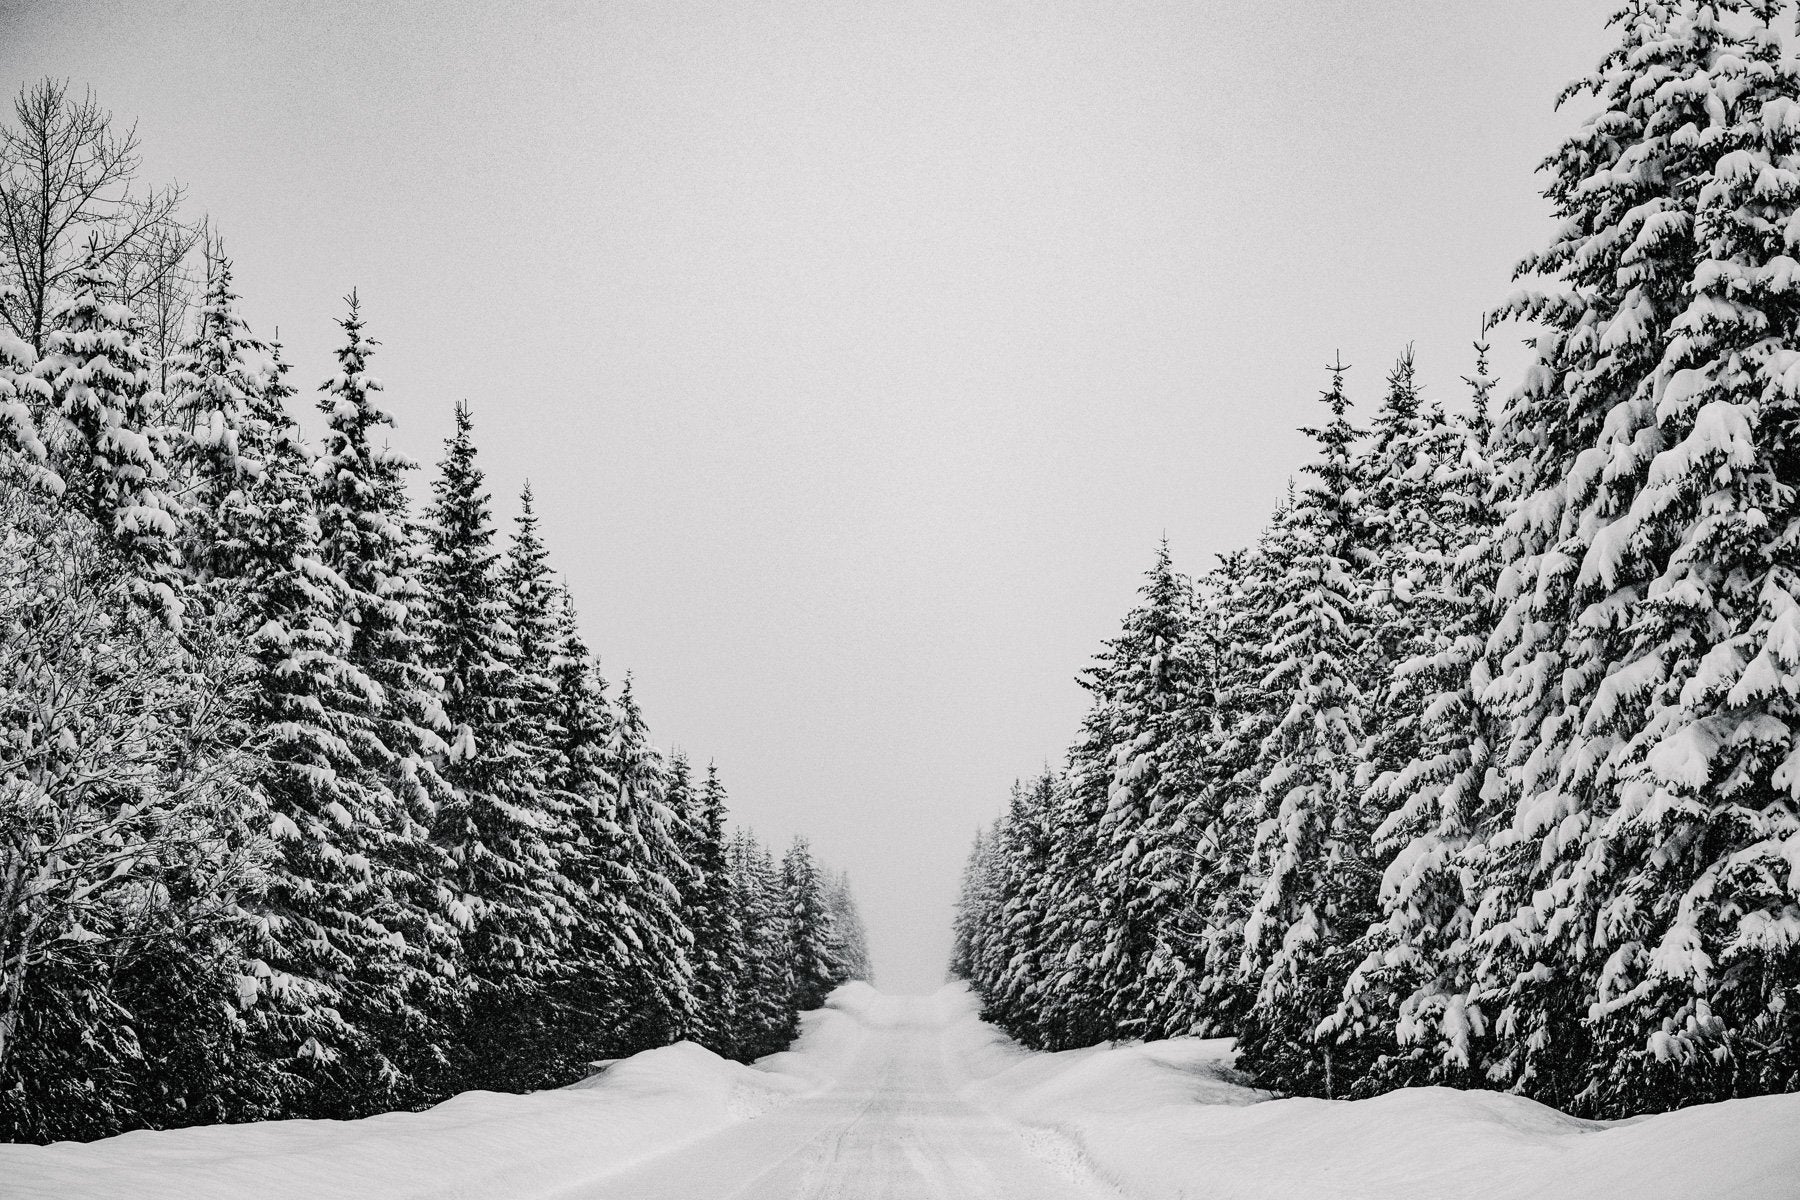 Powder Highway- Canada